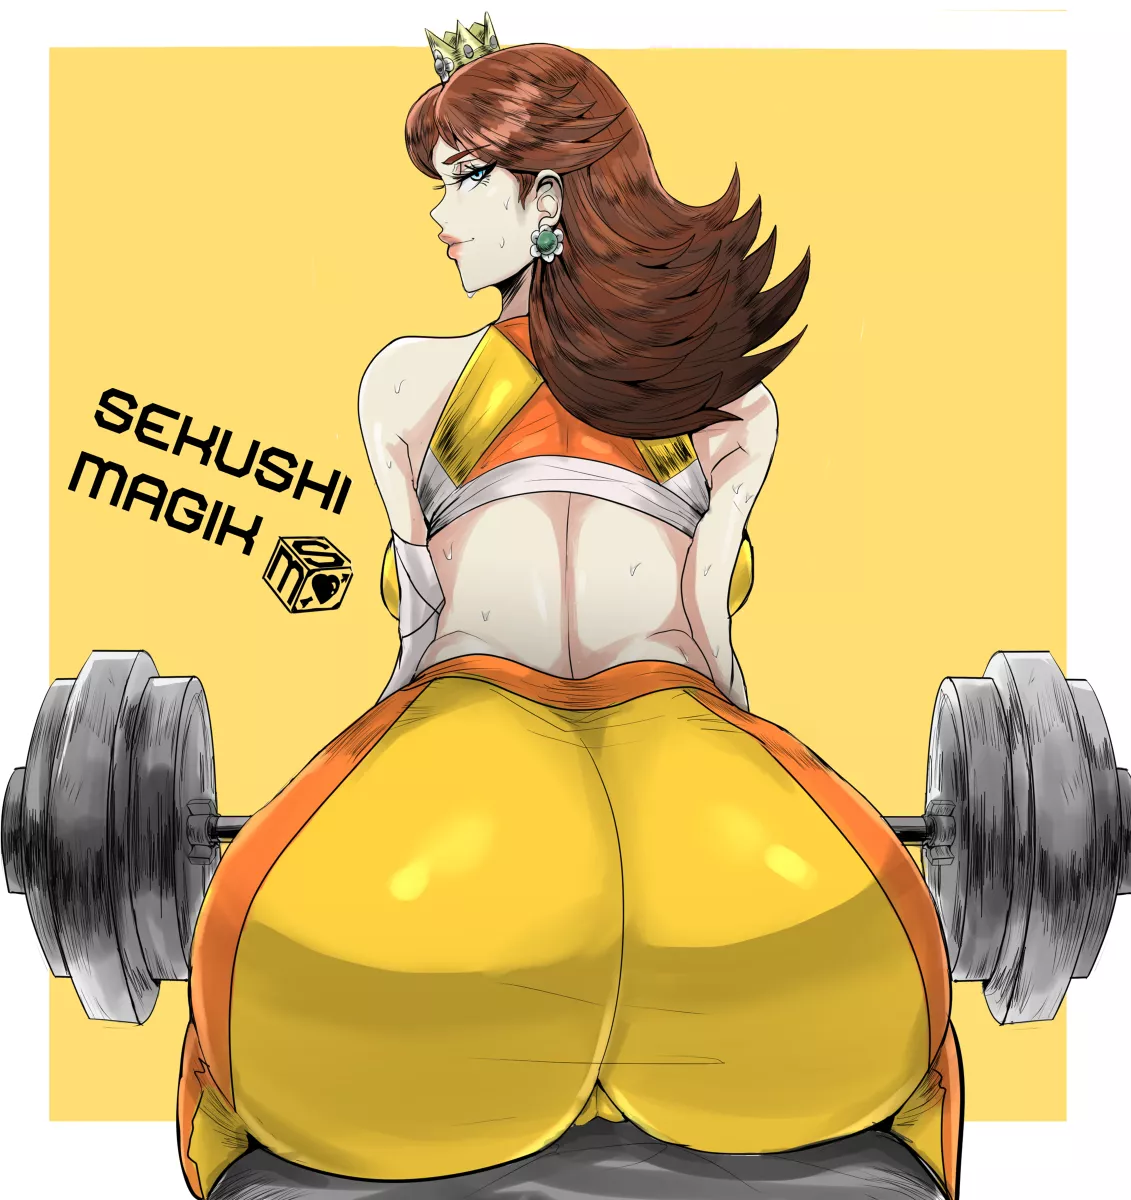 Daisy S Workout Sekushimagik Nudes By Ricky190